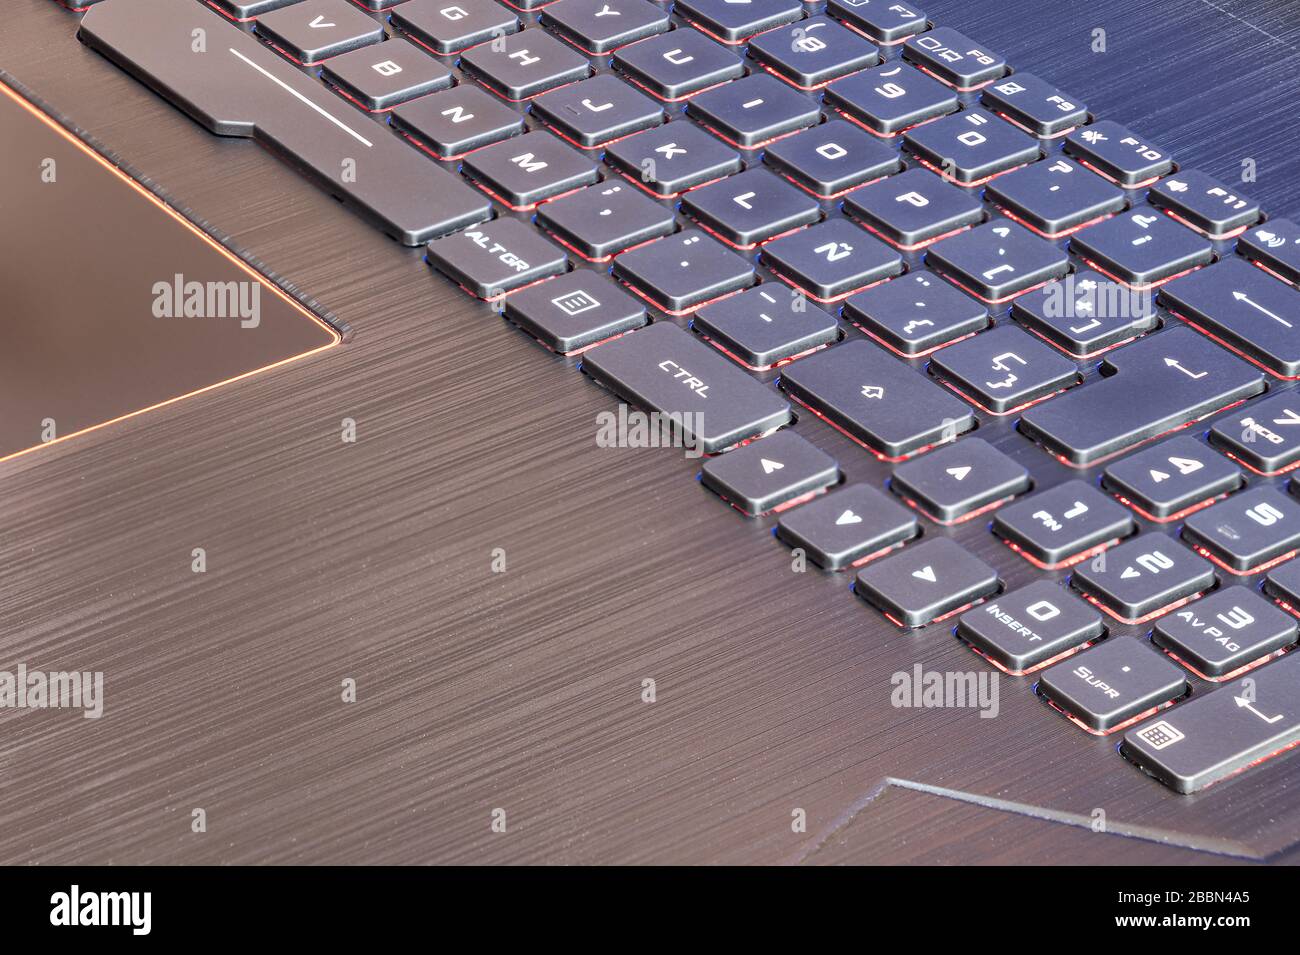 Ordinateur portable à clavier espagnol avec la lettre caractéristique Ñ de  l'alphabet espagnol et des touches lumineuses Photo Stock - Alamy